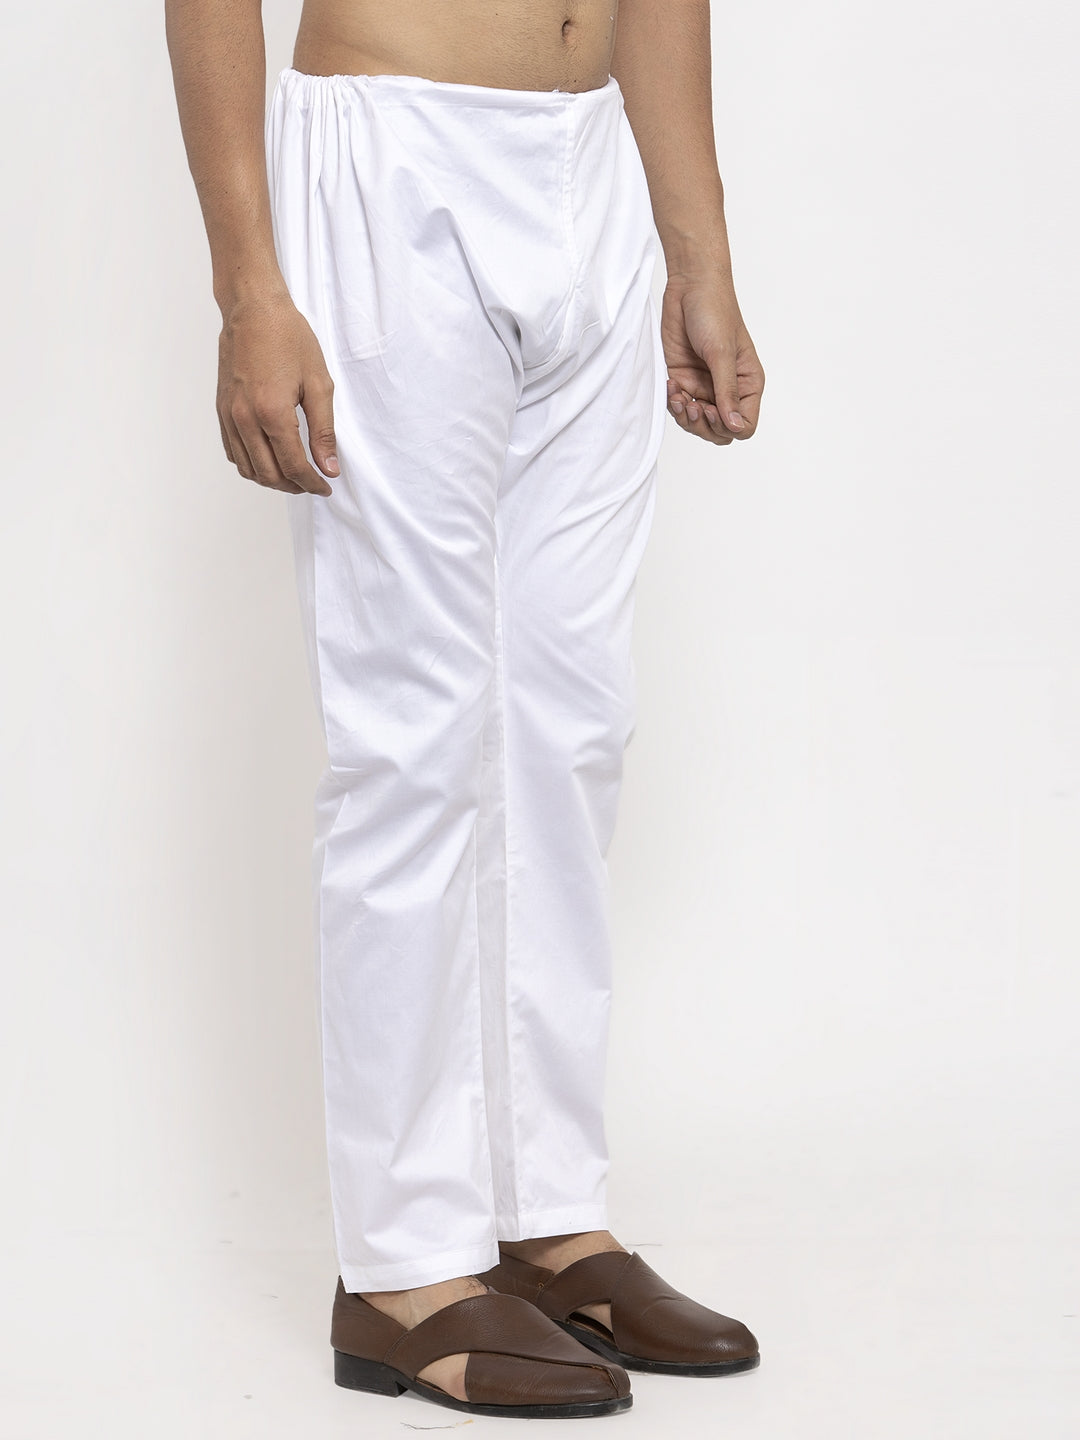 KLOTTHE White Cotton Solid Pyjama